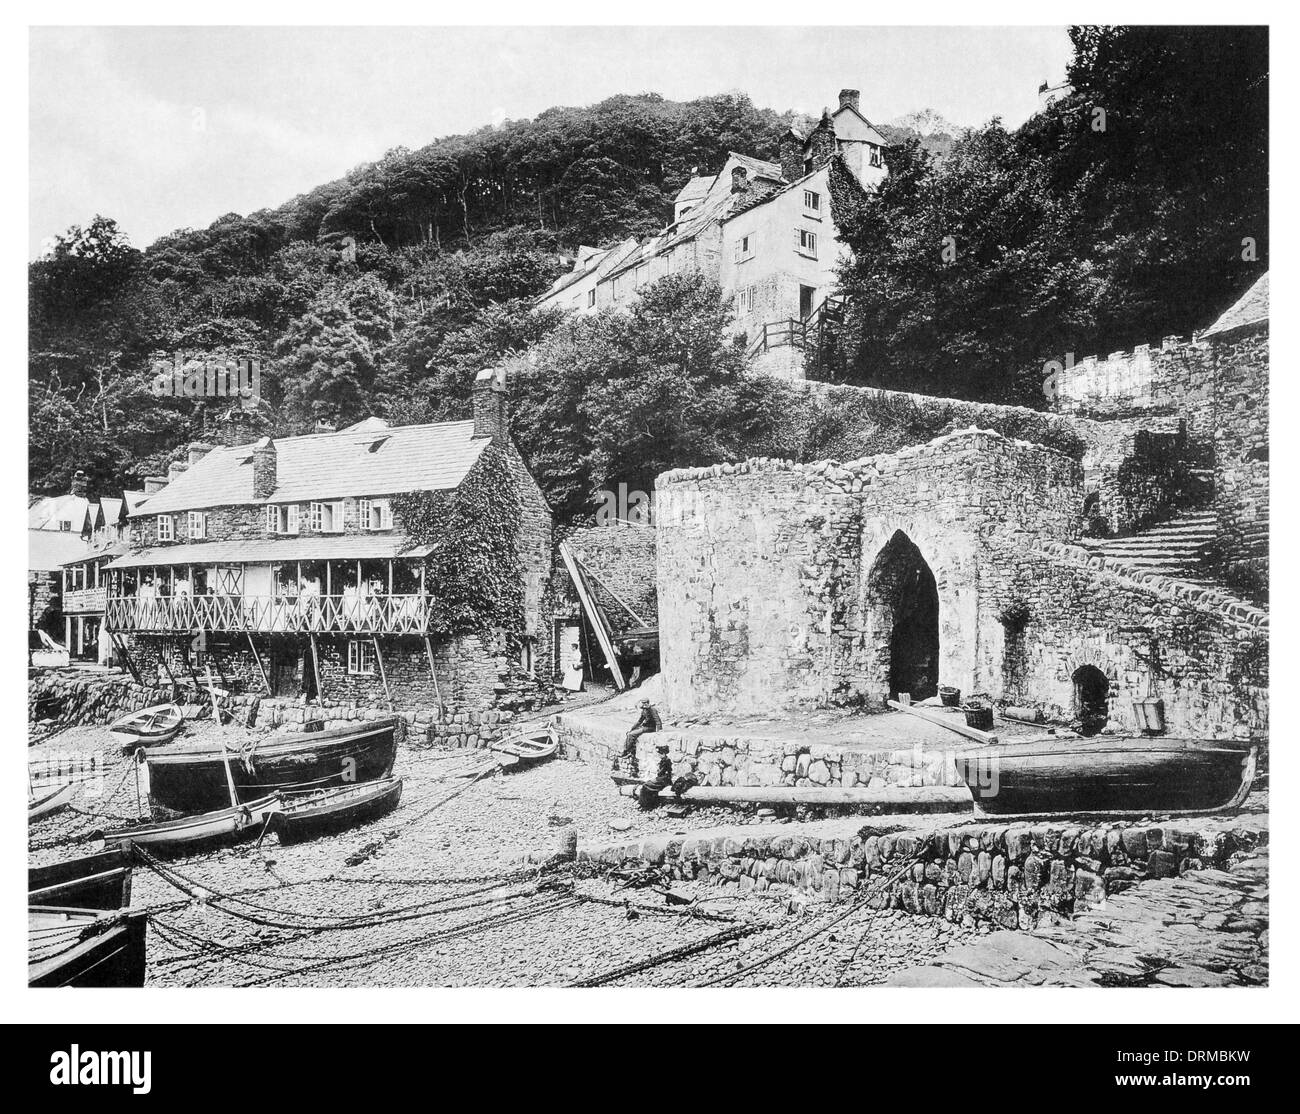 Clovelly est un petit village dans le district de Torridge du Devon, Angleterre. Crazy Kate's Cottage photographié vers 1910 Banque D'Images